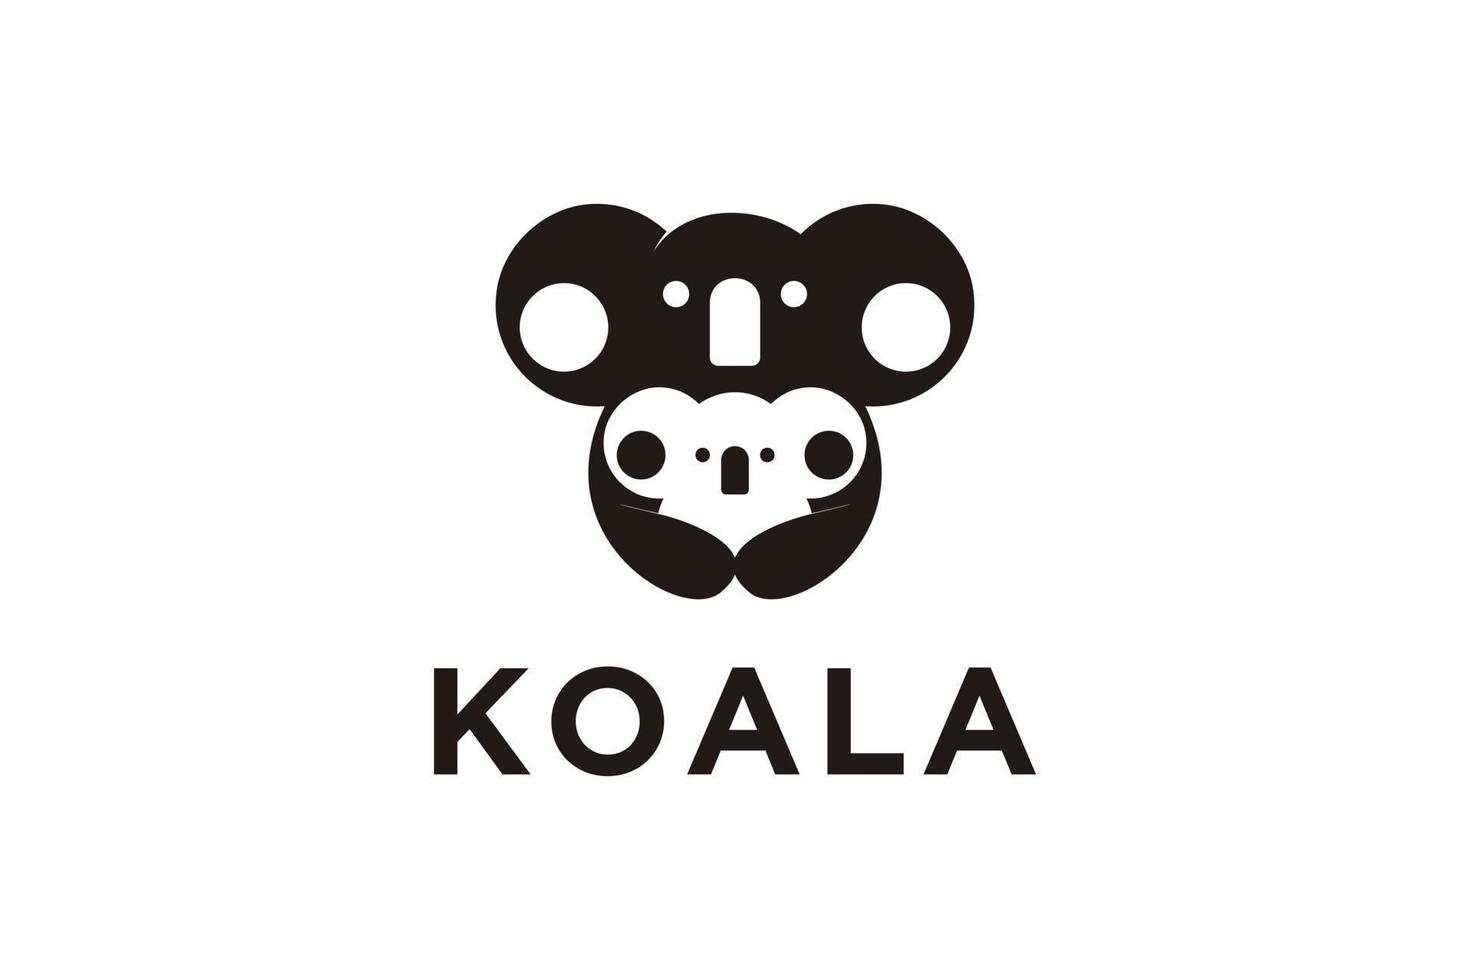 Koala logo design inspiration with cubs vector